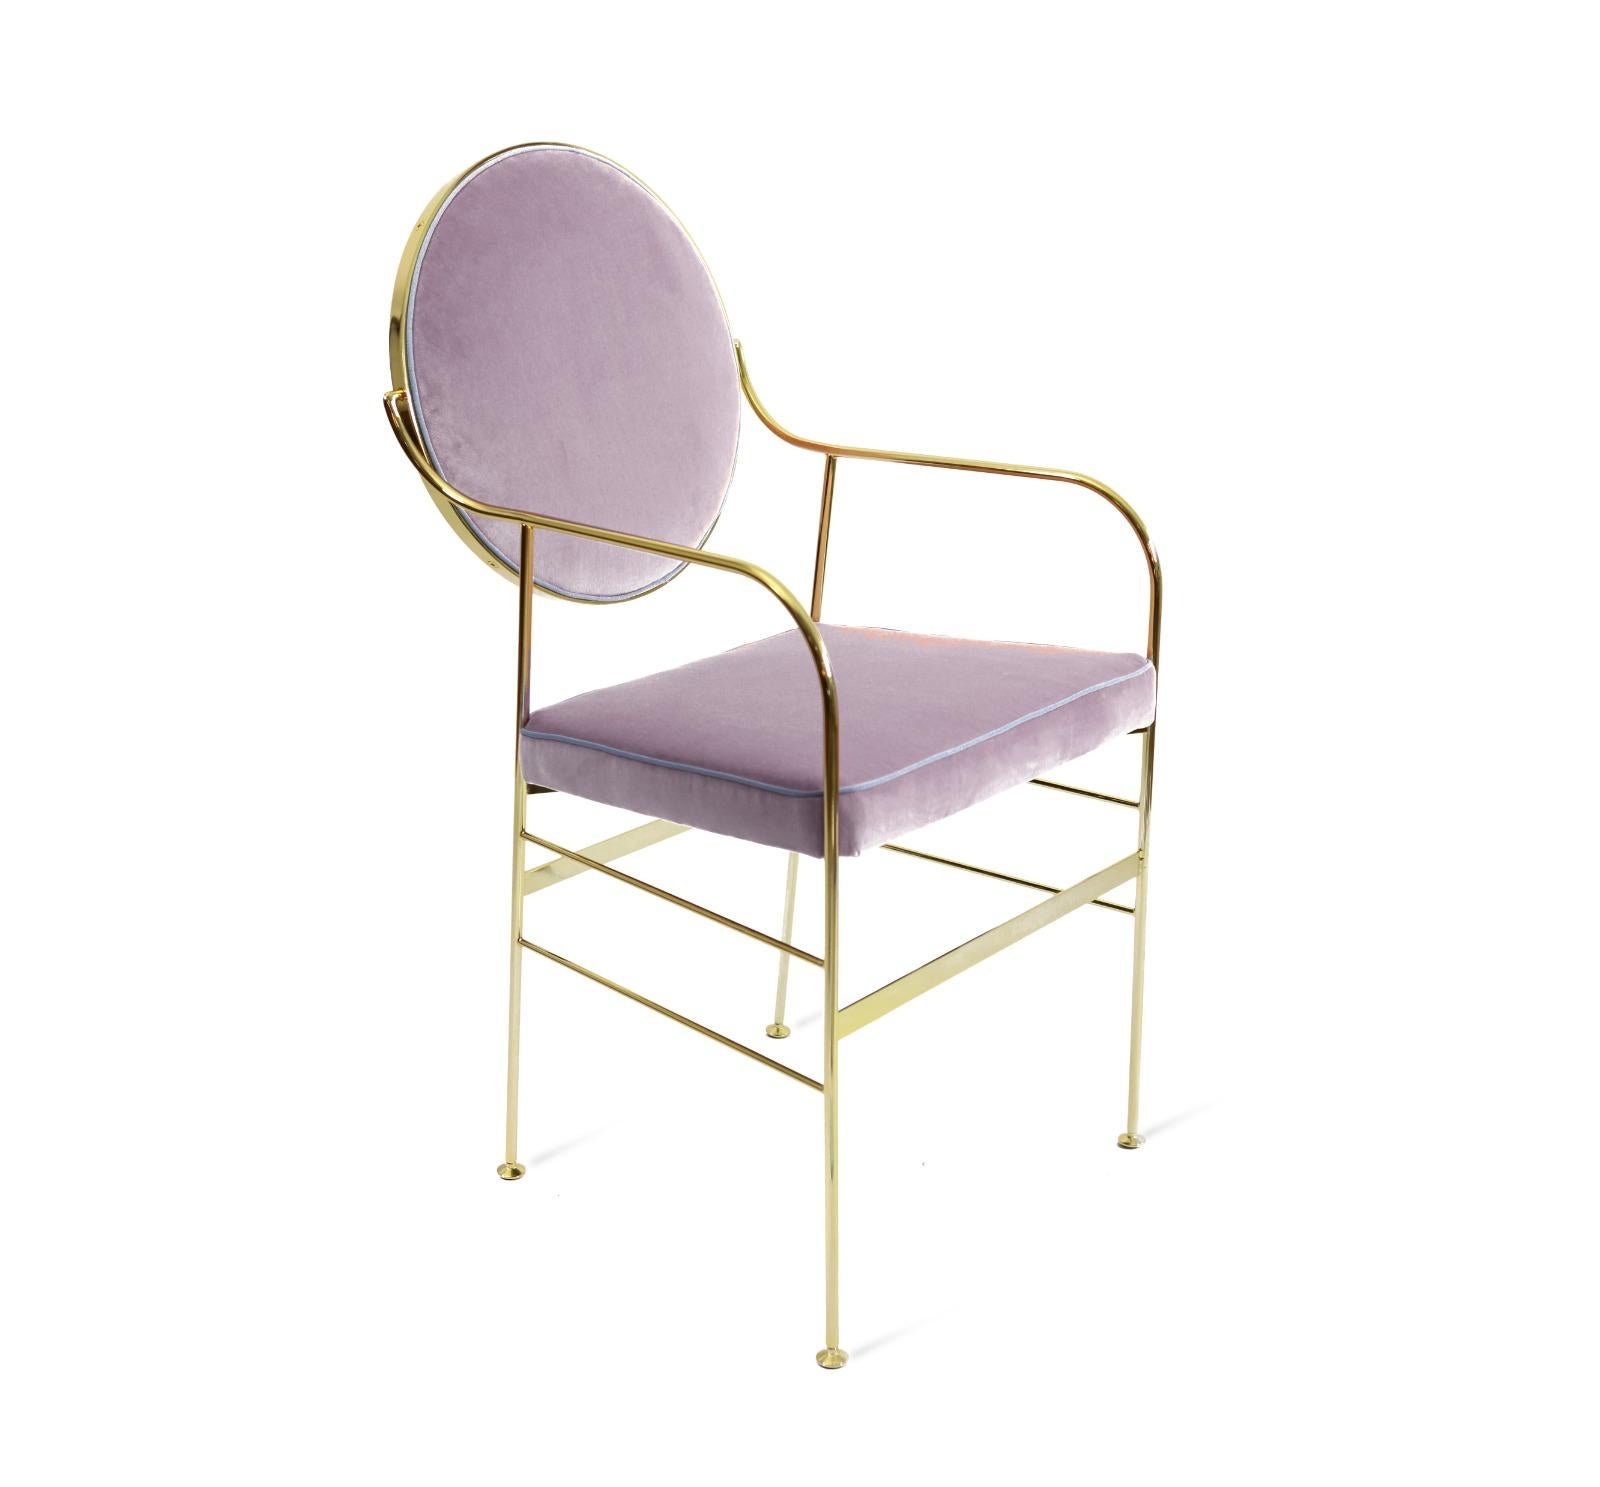 Dieser markante Stuhl hat ein Eisengestell mit einer 24-karätigen Goldauflage und eleganten Füßen aus verzinktem Messing. Die Rückenkissen (die sich bewegen lassen, um die perfekte Ausrichtung zu erreichen) und die Sitzfläche sind mit